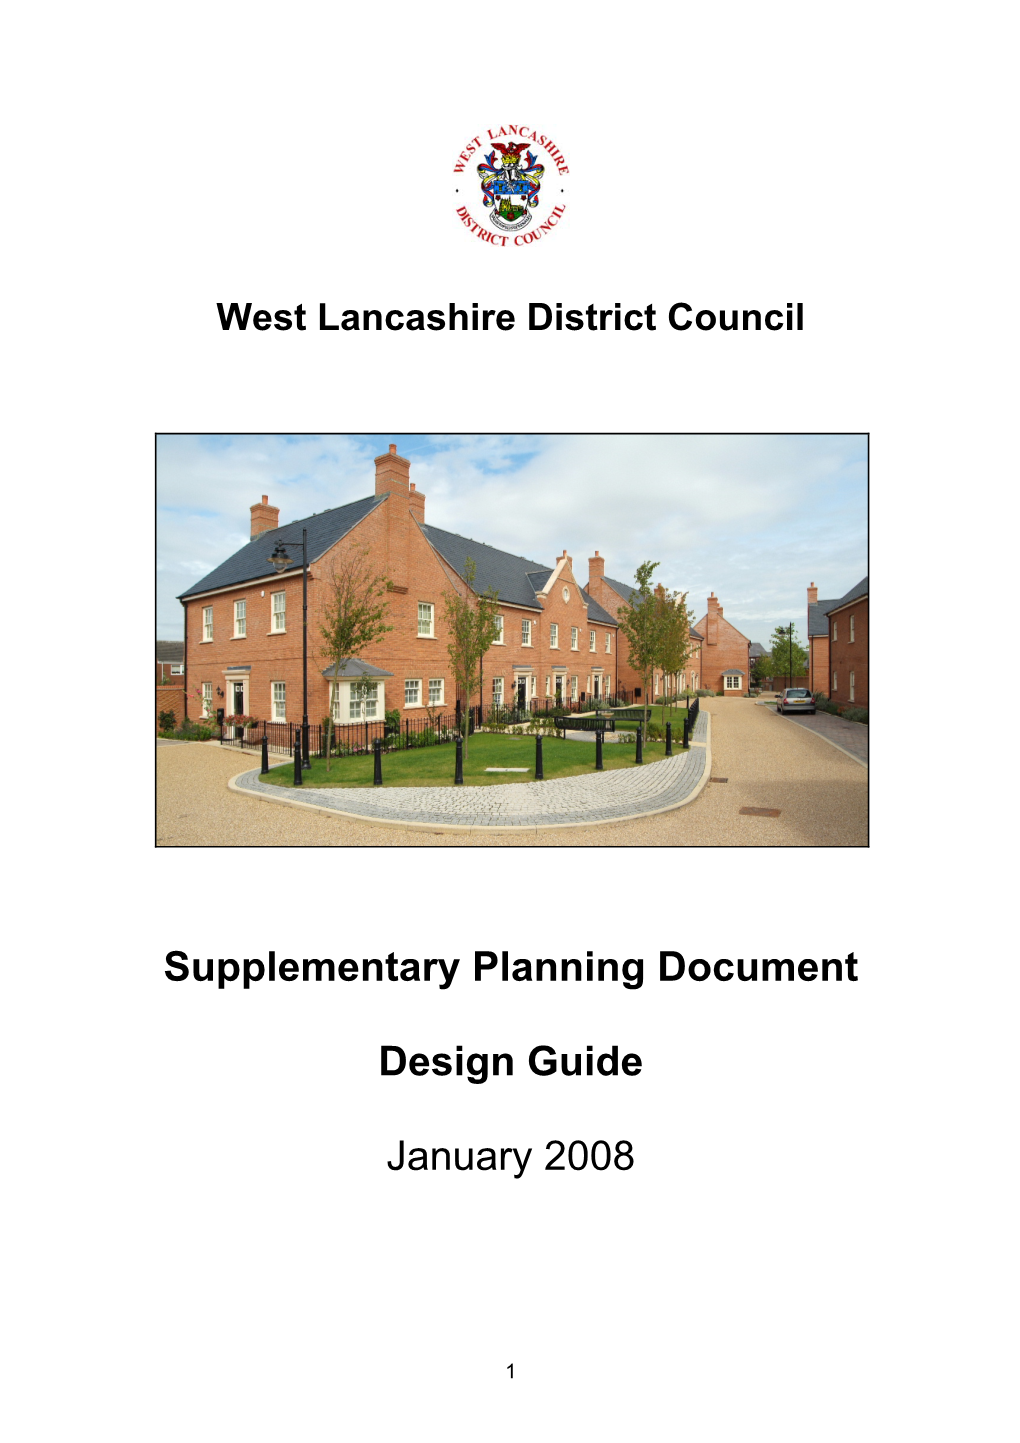 West Lancashire Design Guide